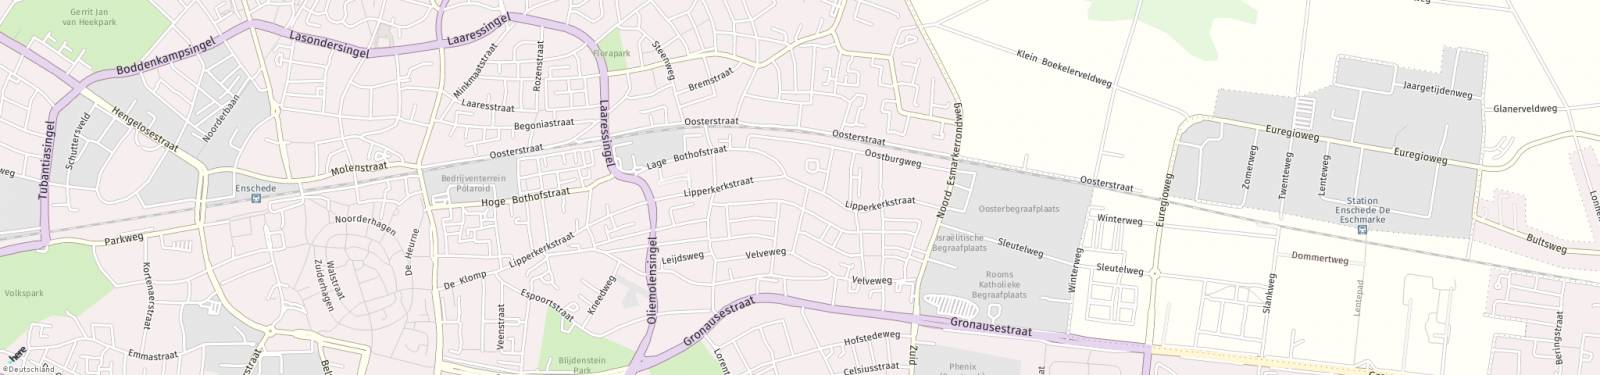 Kaart met locatie Huurwoning Lipperkerkstraat